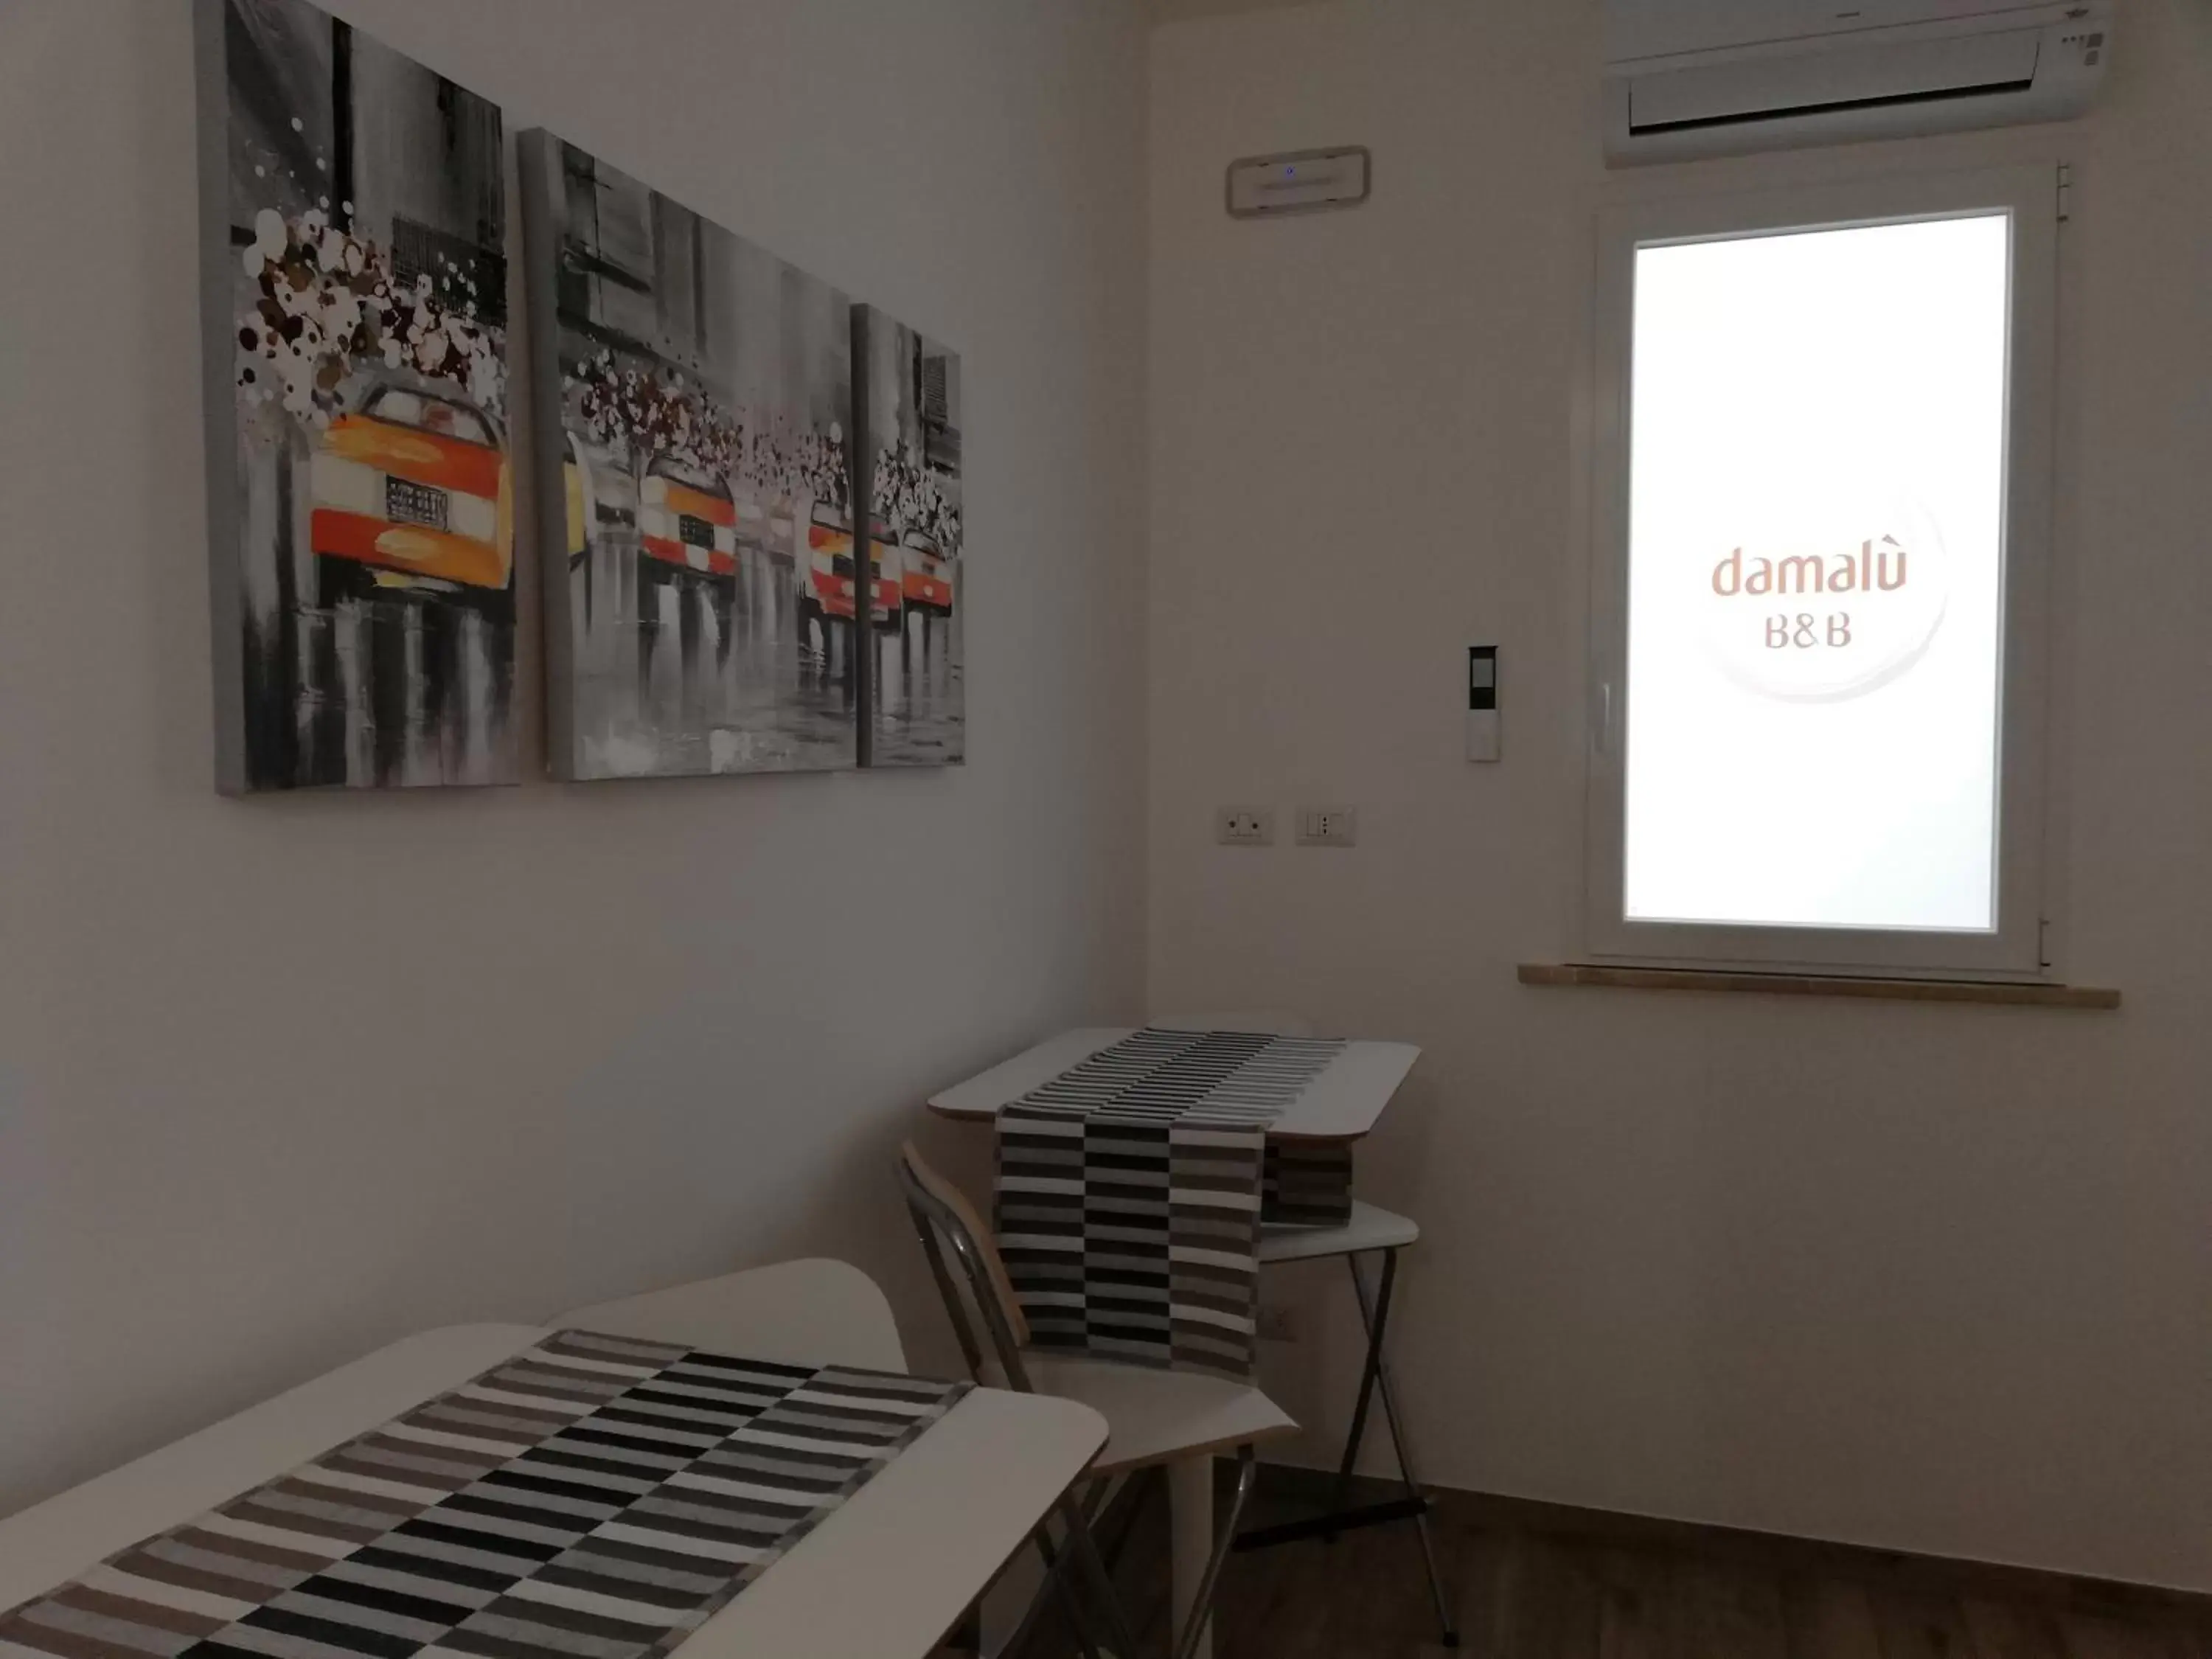 Communal lounge/ TV room in DAMALU'